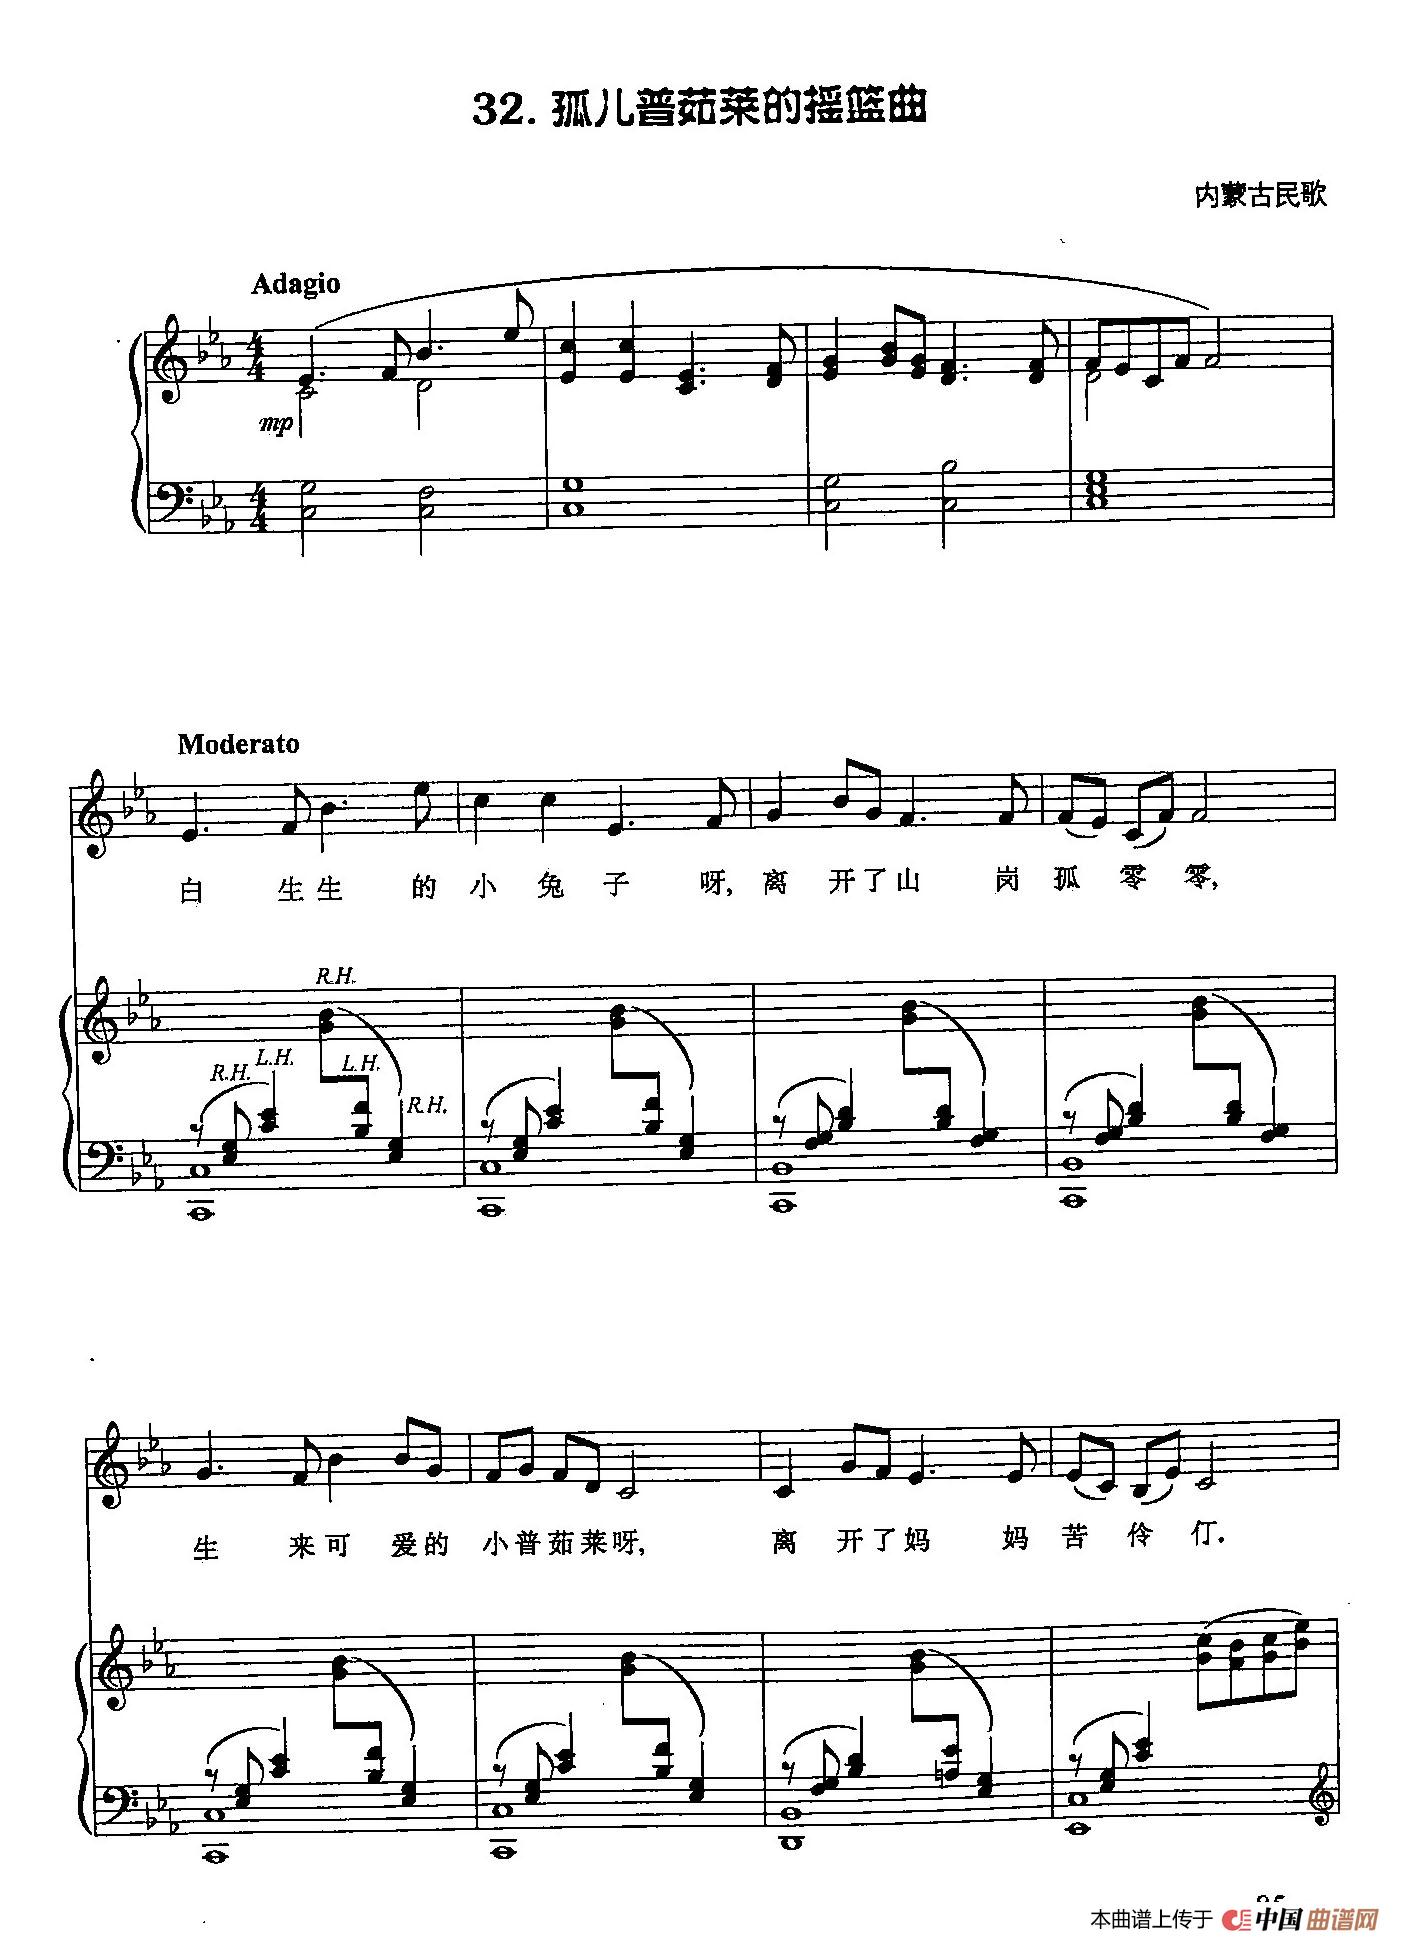 丁小琴编-32孤儿普茹莱的摇篮曲（正谱） （ 内蒙古民歌）(1)_丁小琴编-32孤儿普茹莱的摇篮曲（正谱）1.jpg